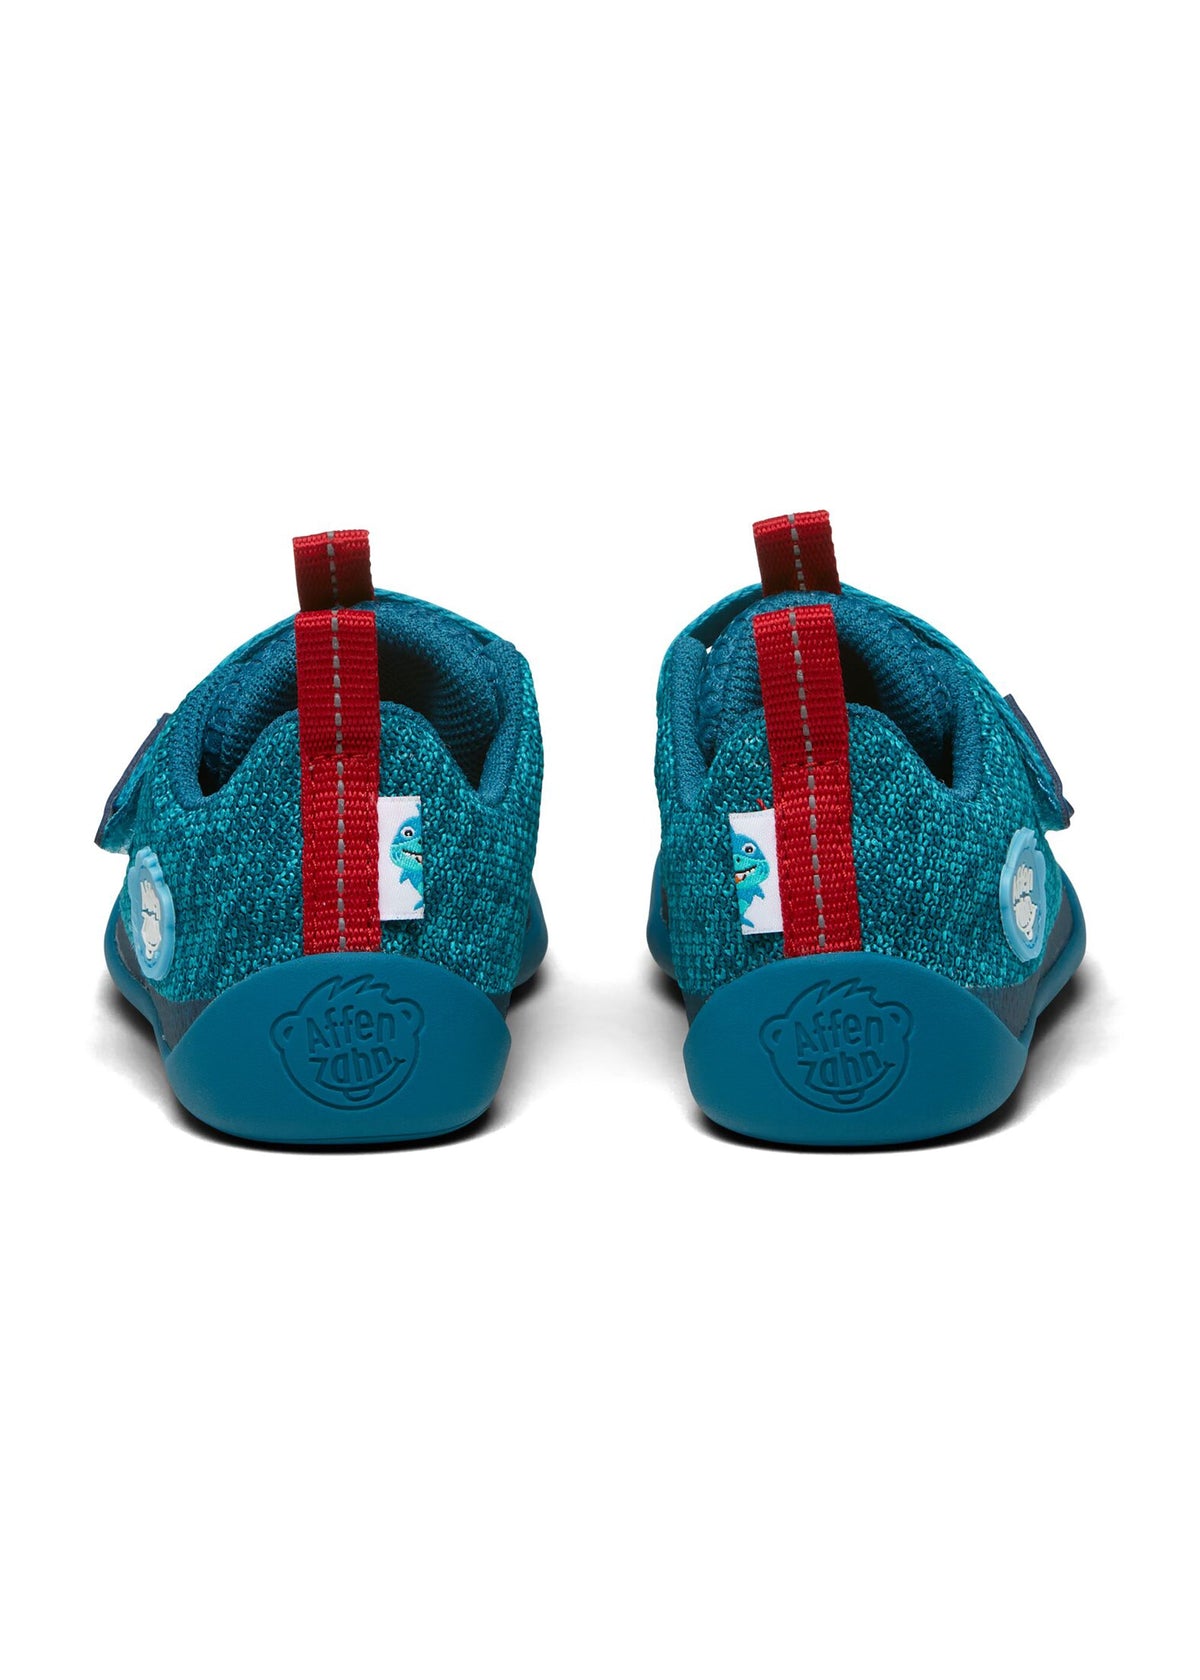 Barn Shark barfota sneakers - Sneaker Knit Happy, blå, vegan